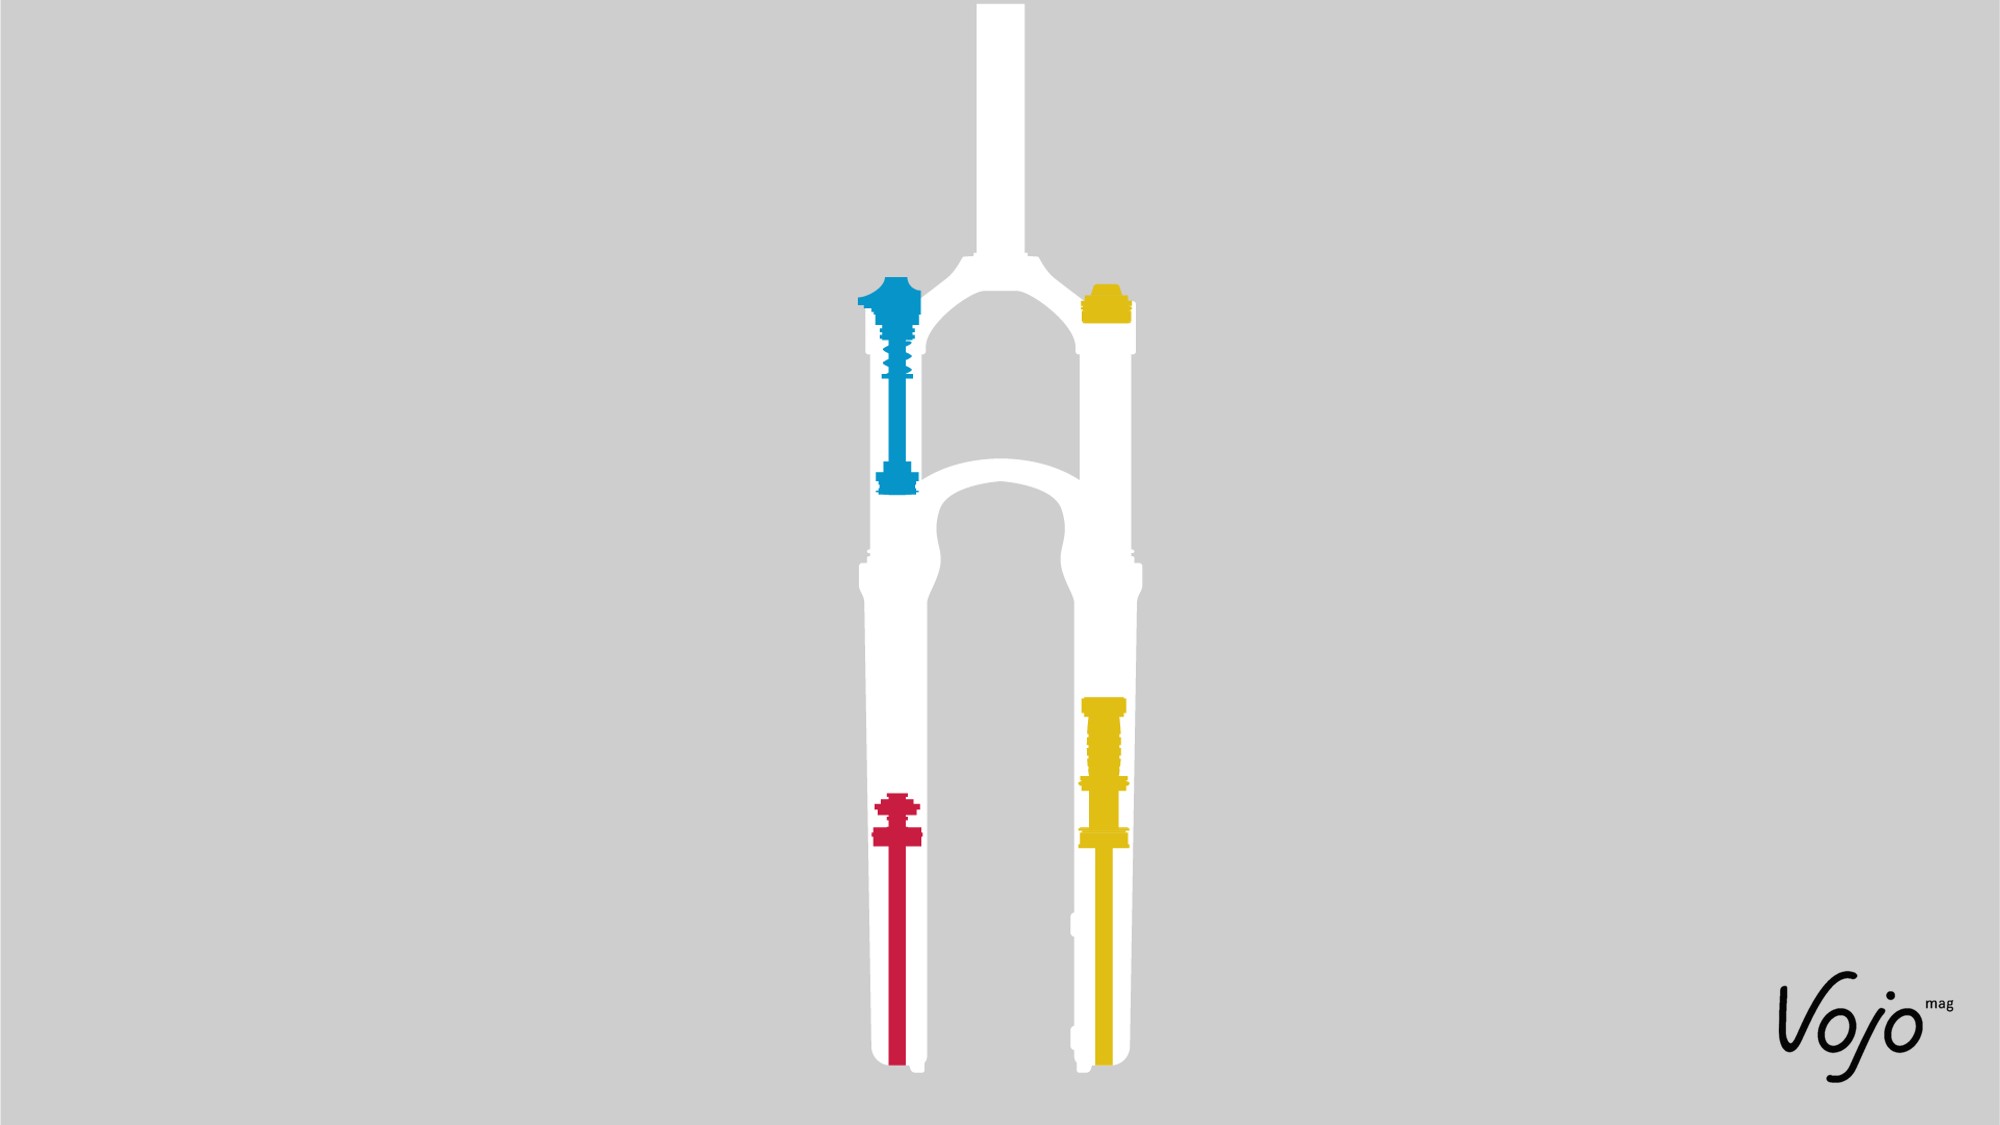 En bleu le circuit de compression, en rouge celui de rebond et en jaune la partie « ressort » (l’air ou le ressort hélicoïdal ne sont pas représentés).